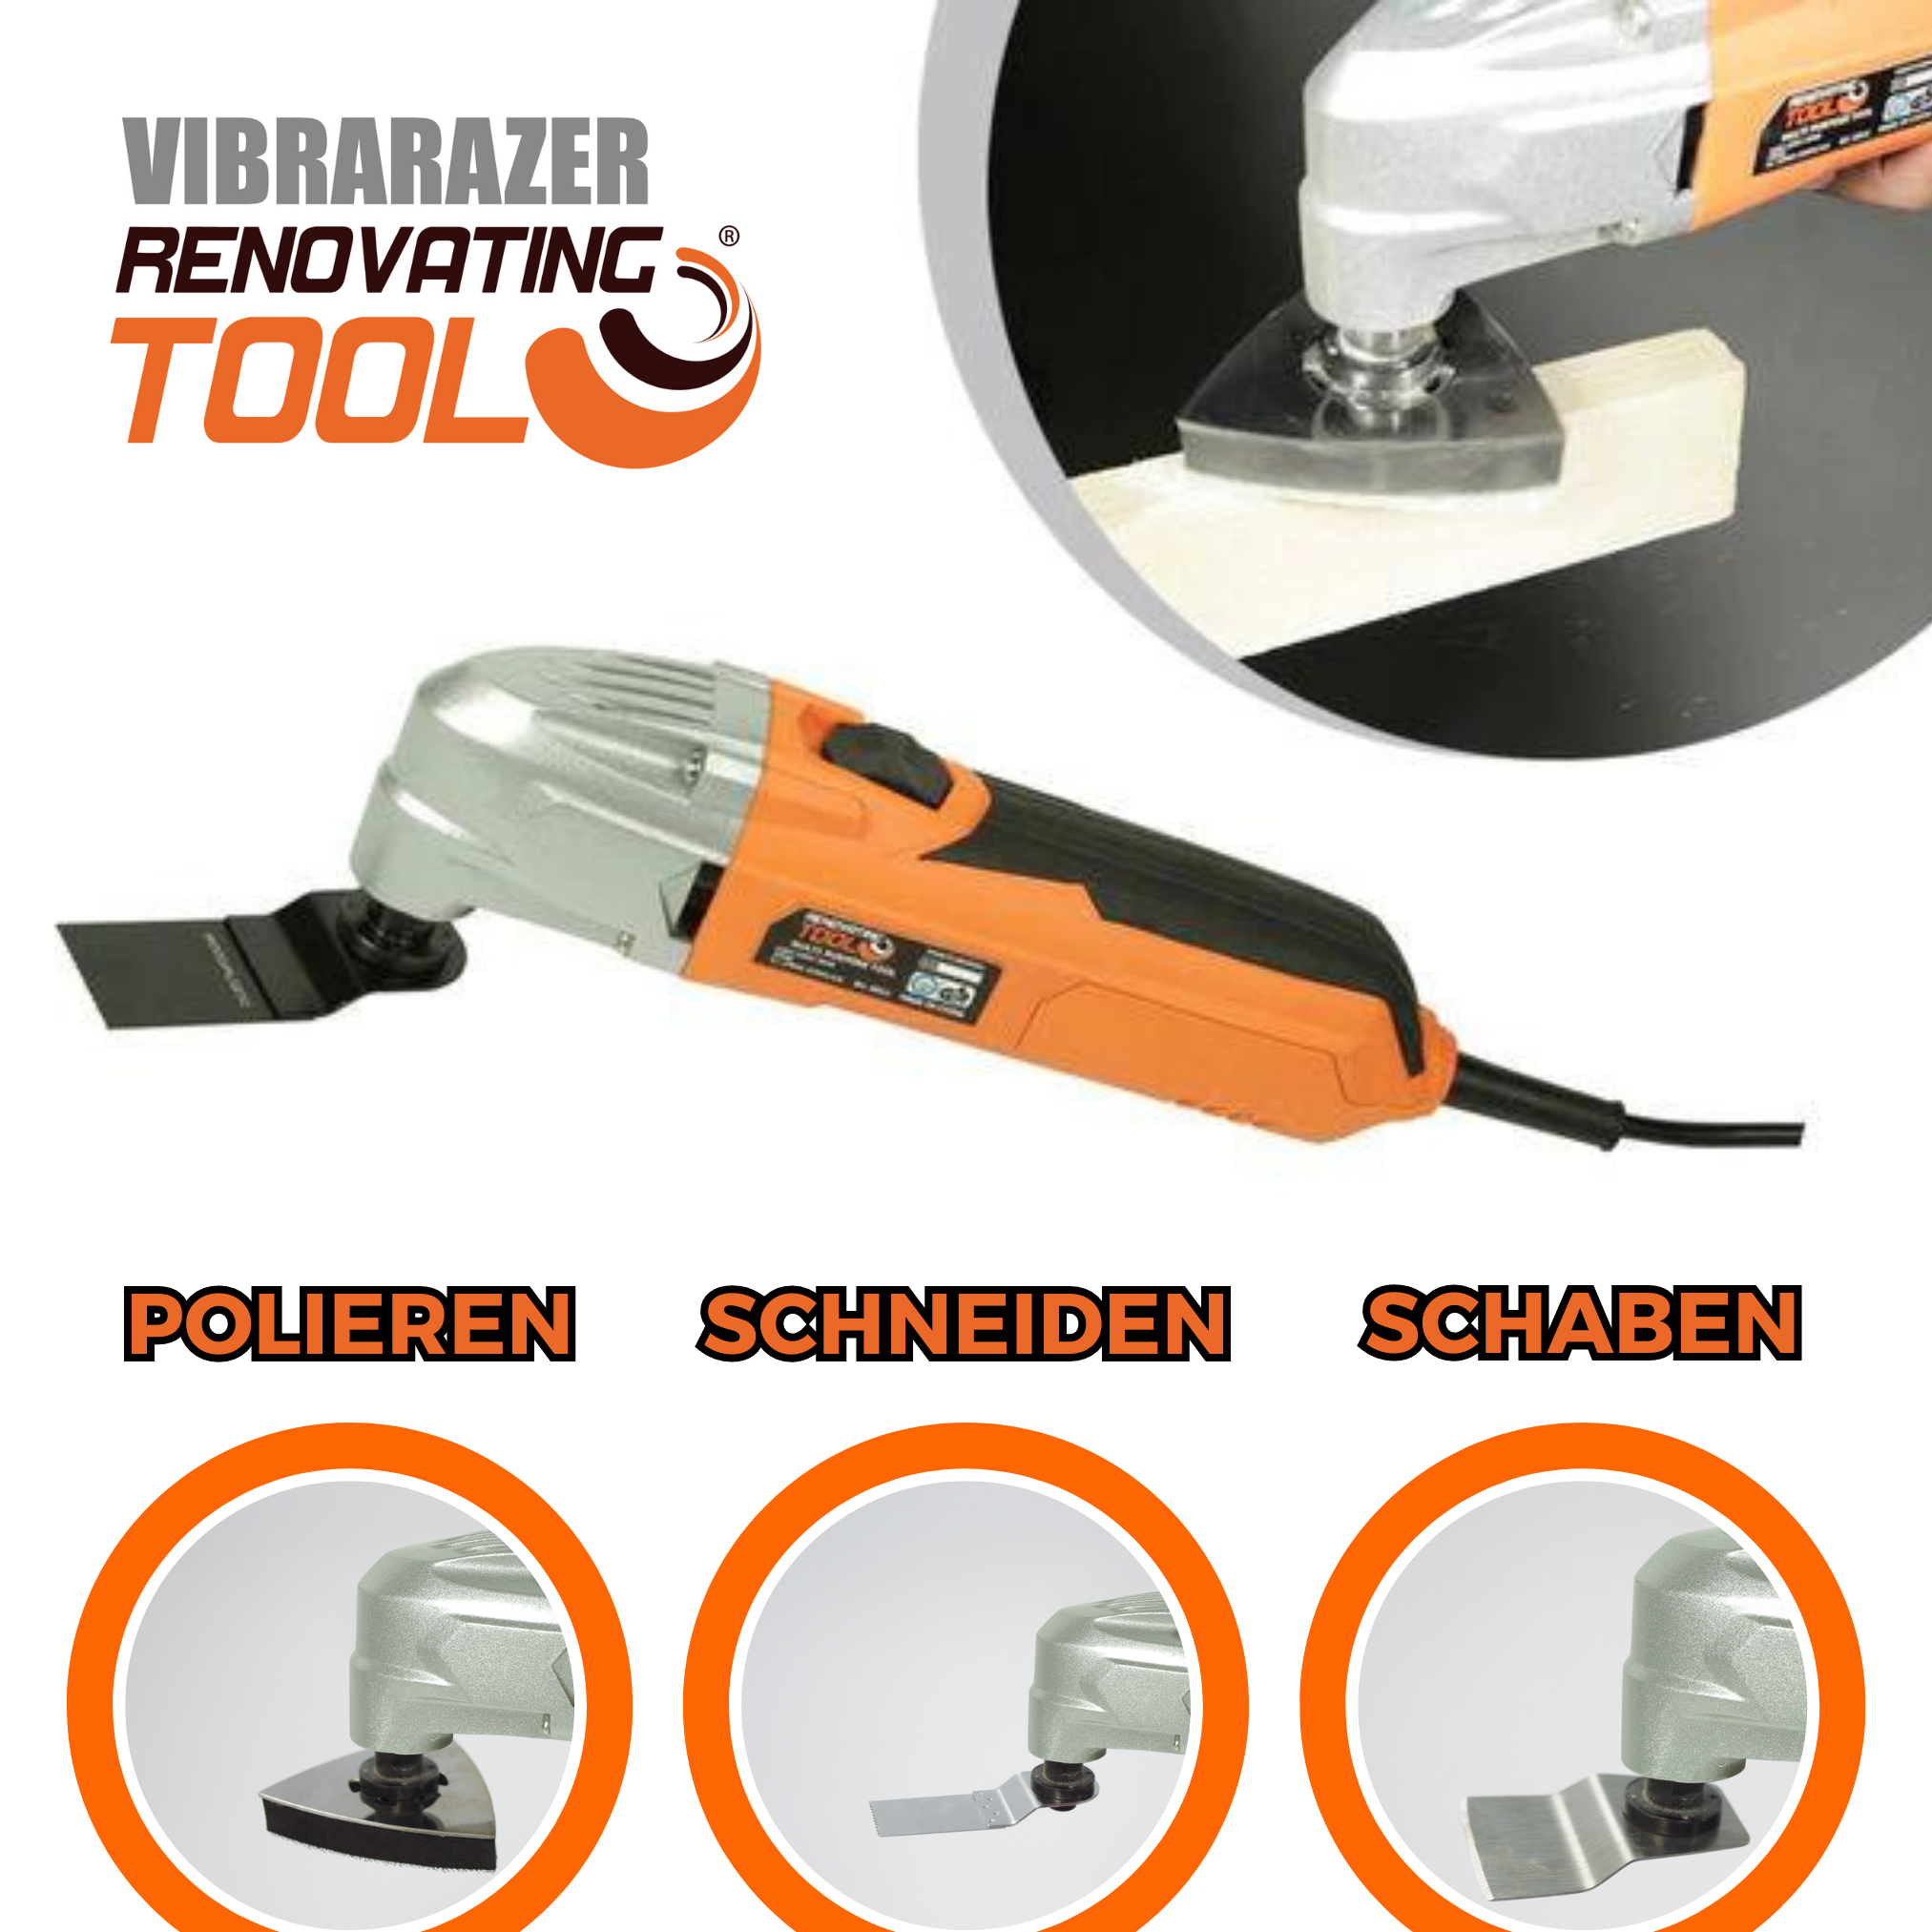 INDUSTEX Vibrarazer Renovating Zubehörteilen Series Multifunktionswerkzeug, Pro Plus Tool® orange - 40 mit